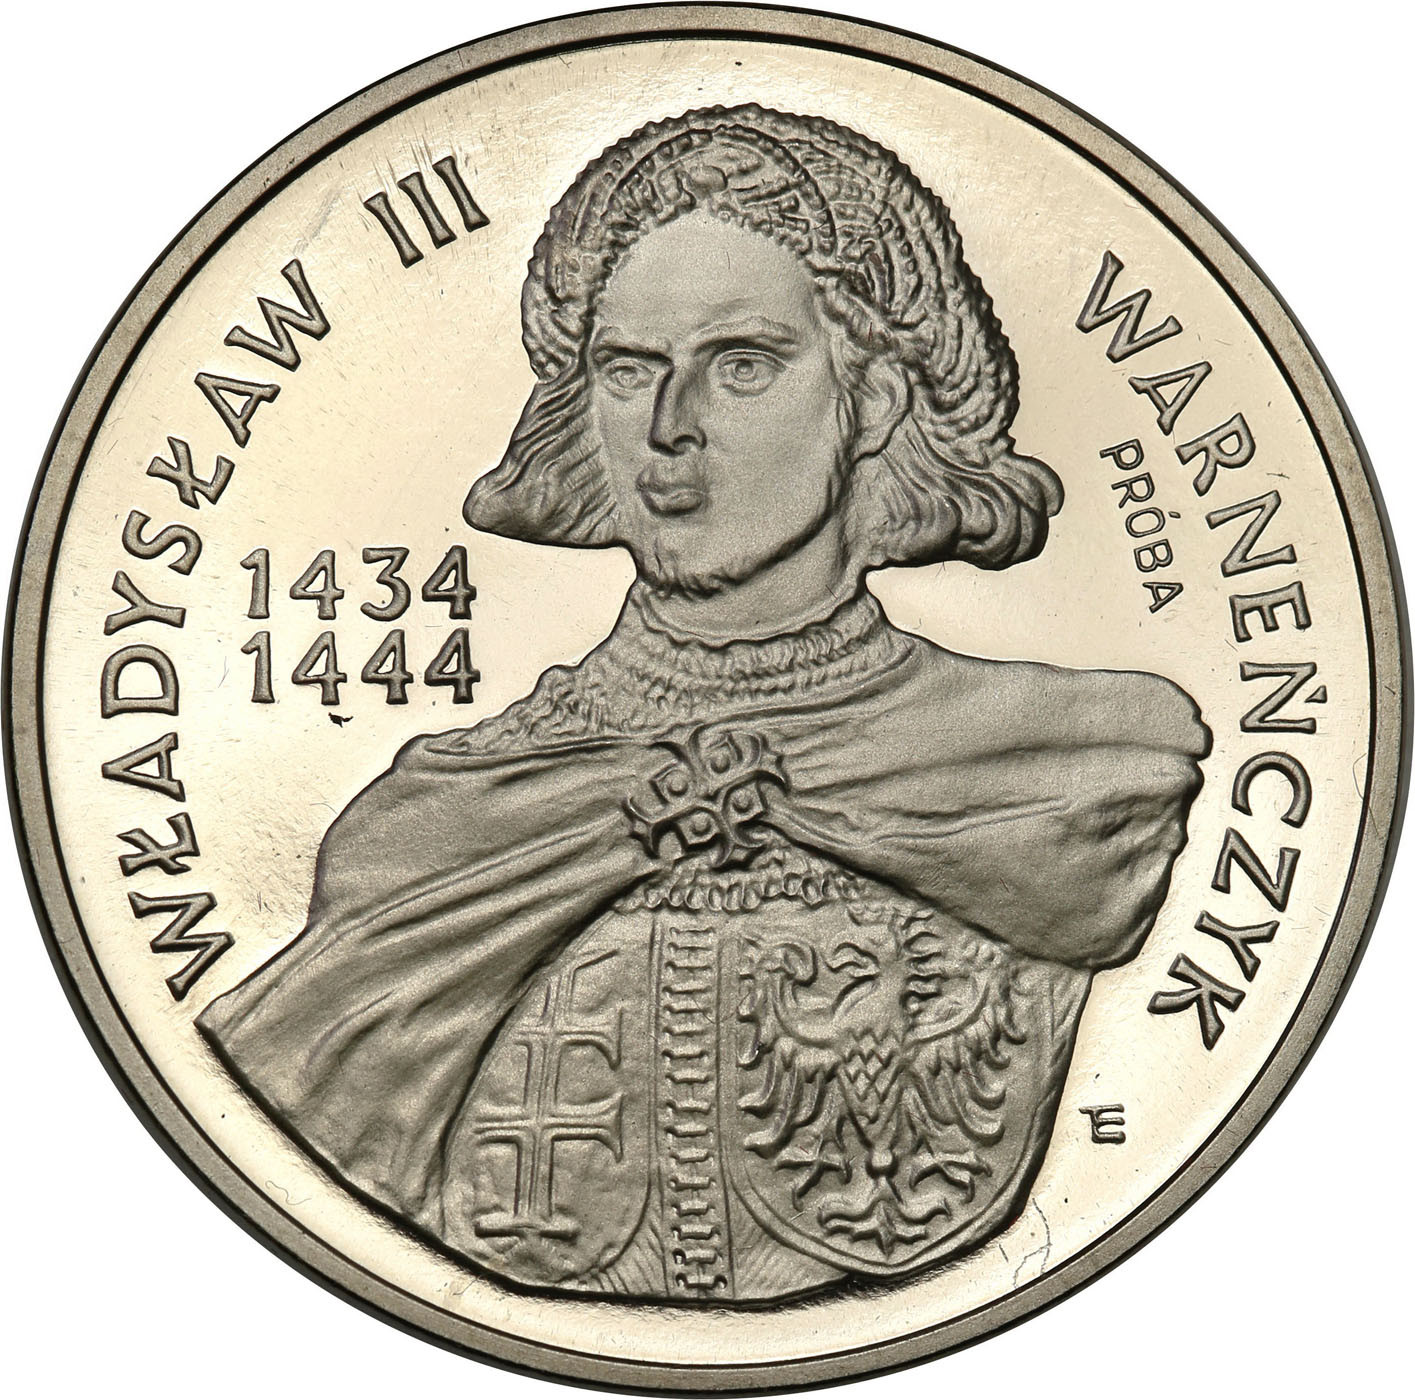 PRL. PRÓBA Nikiel 200 000 złotych 1992 – Władysław Warneńczyk - półpostać